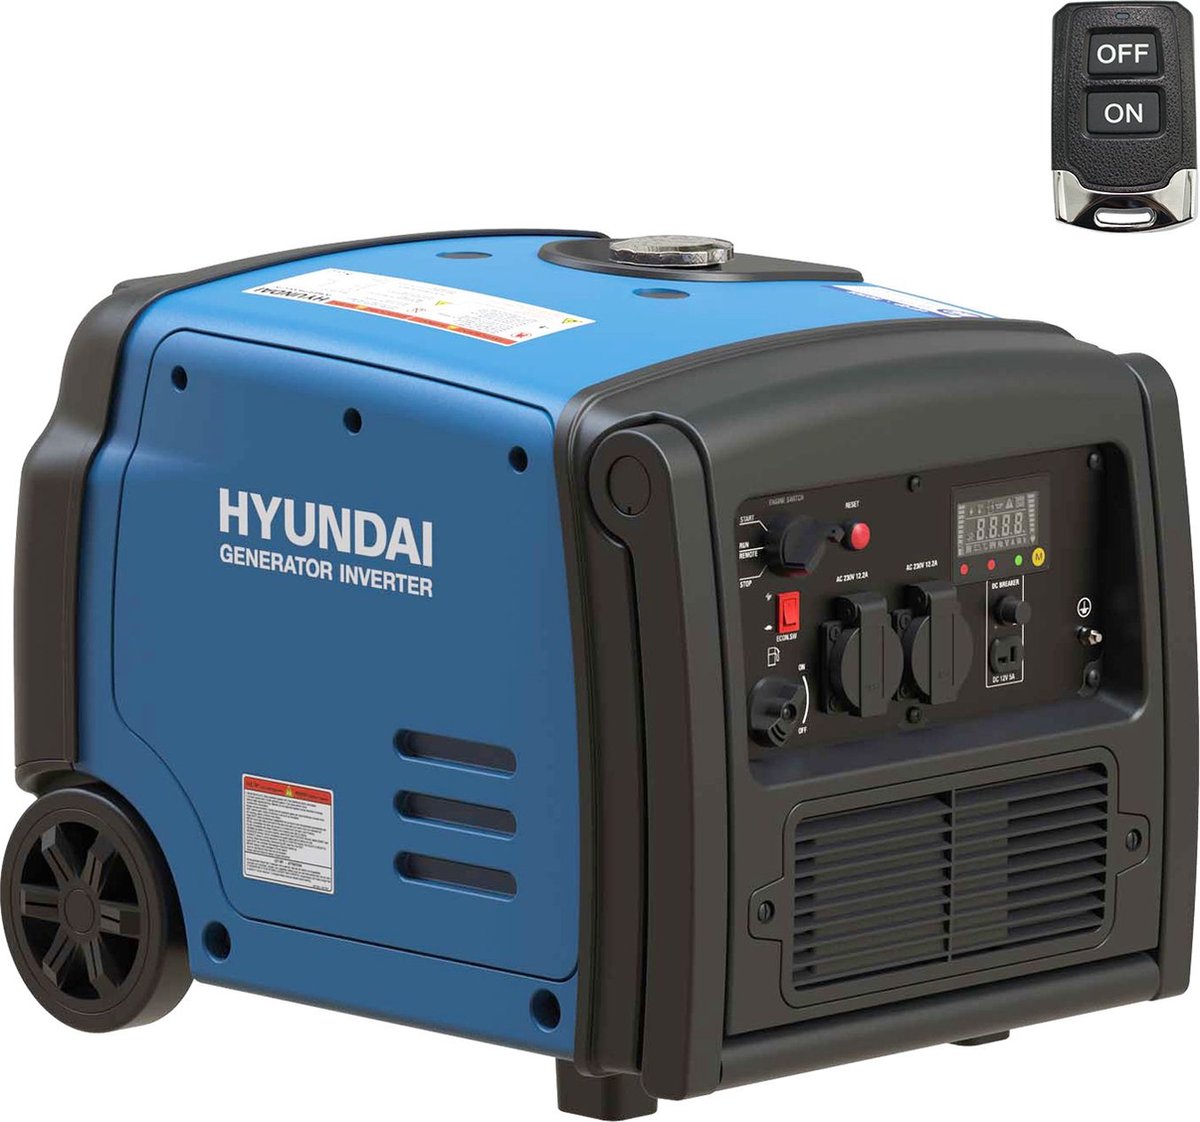 HYUNDAI inverter generator 3200W - Benzinemotor - Schoon, fluisterstil en betrouwbaar - Geschikt voor gevoelige elektronische apparatuur - makkelijk verrijdbaar - Hyundai